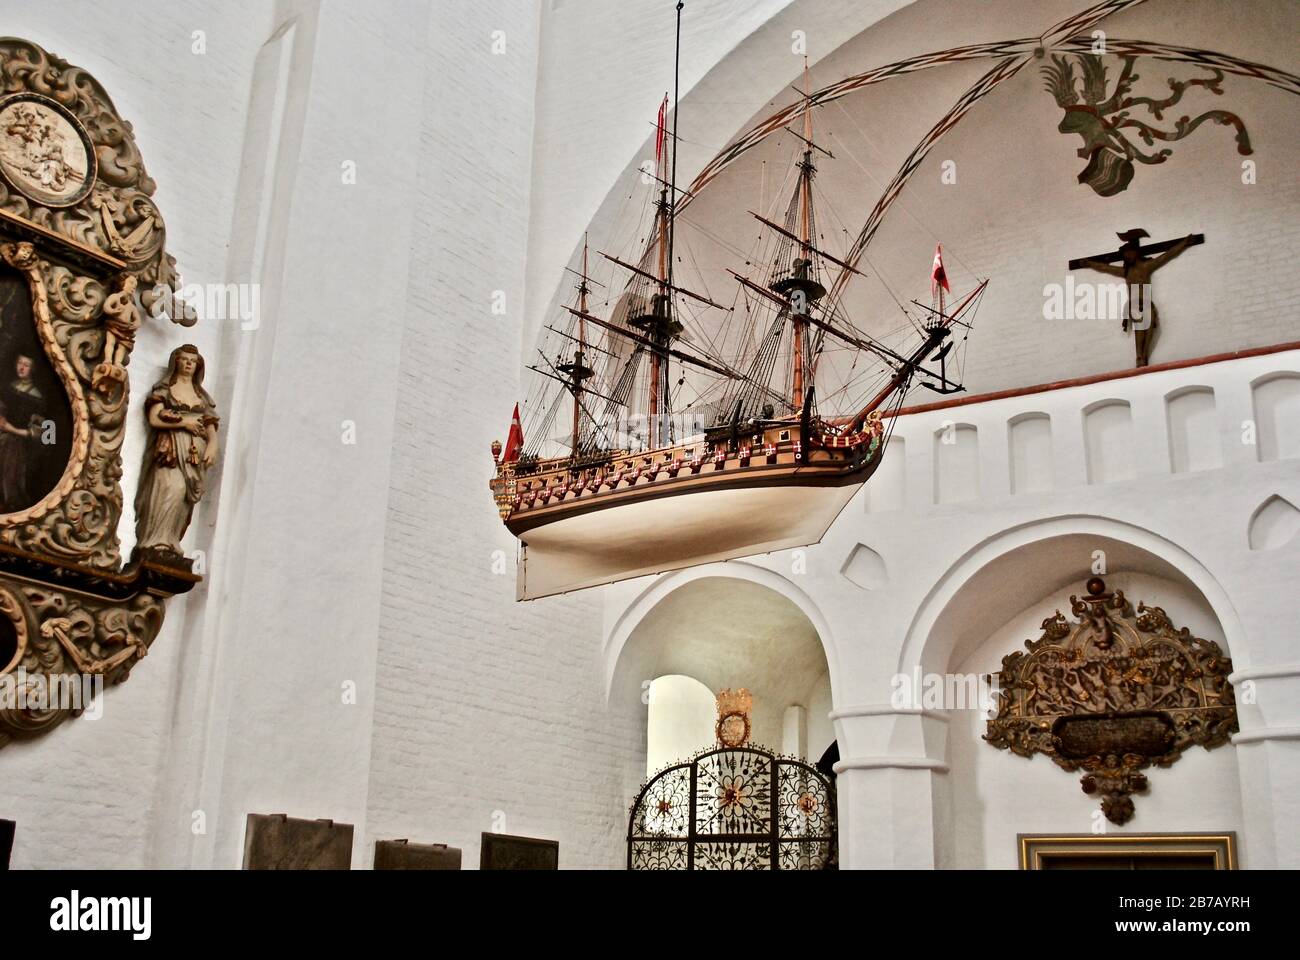 Kathedrale Von Aarhus (Dänisch: Aarhus Domkirke). Ein Schiff dient als Erinnerung an die auf See verlorenen Menschen und als Symbol für das Segel des Menschen von der Wiege bis zum Grab. Stockfoto